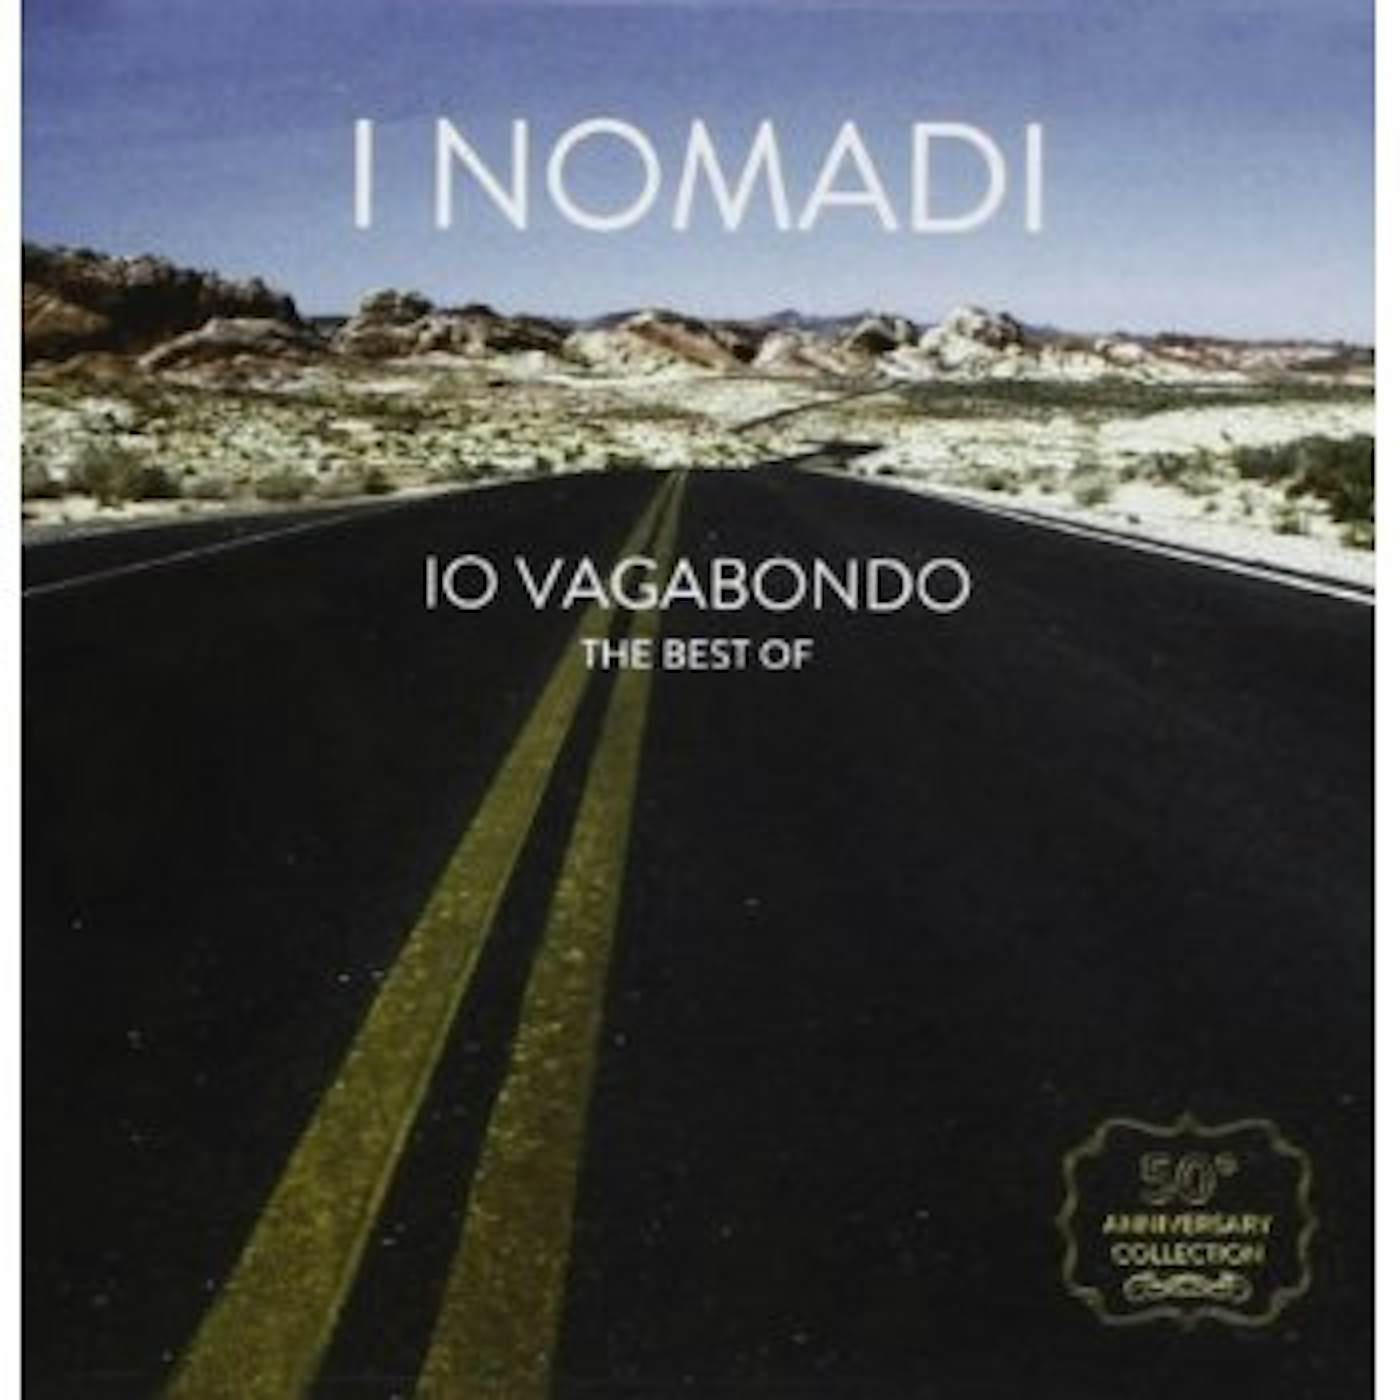 Nomadi IO VAGABONDO BEST OF CD